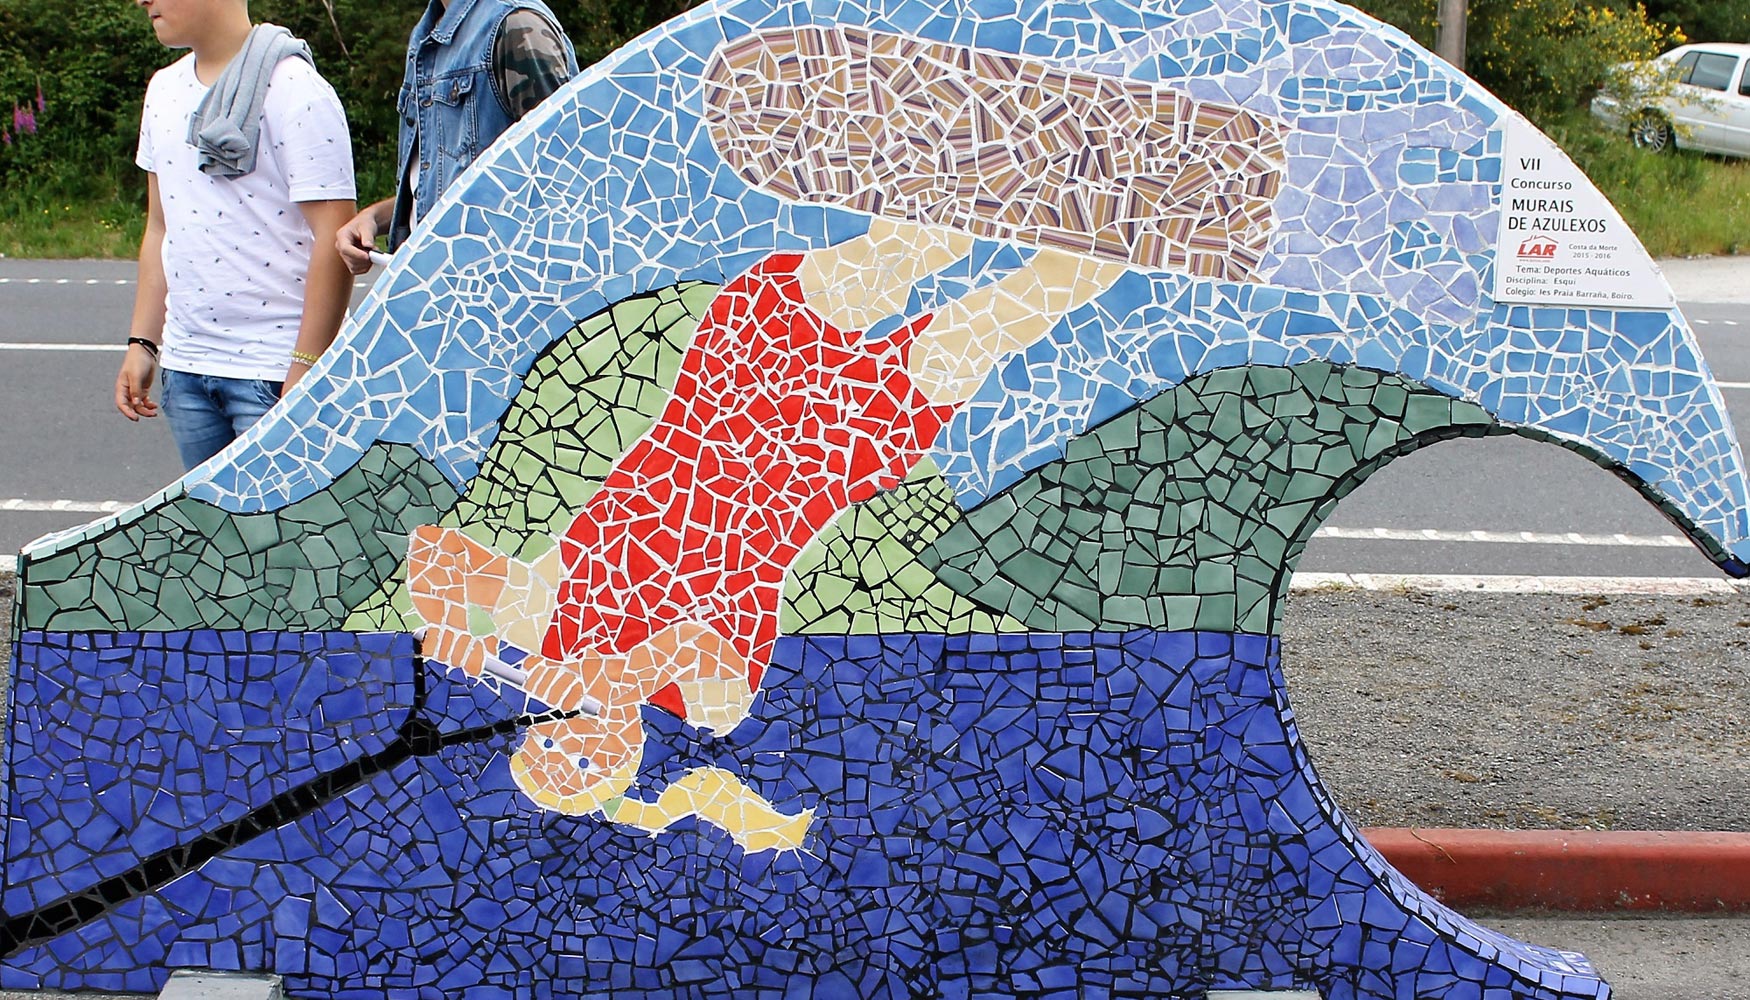 Mapei patrocina, una vez ms, el Concurso de Murales de Azulejos Lar